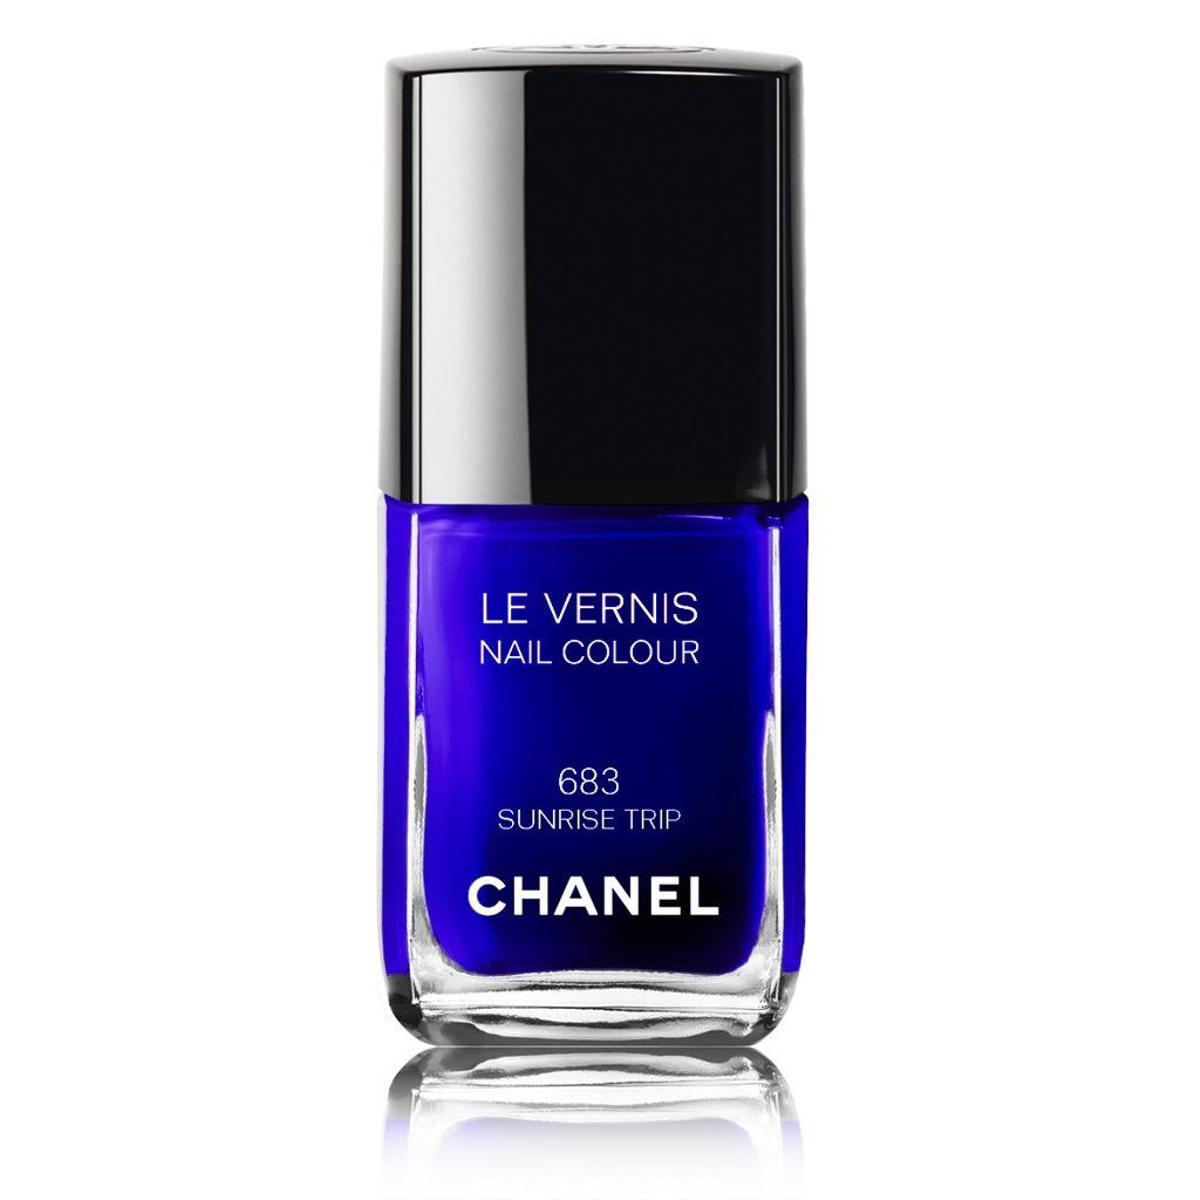 Le Vernis, Chanel